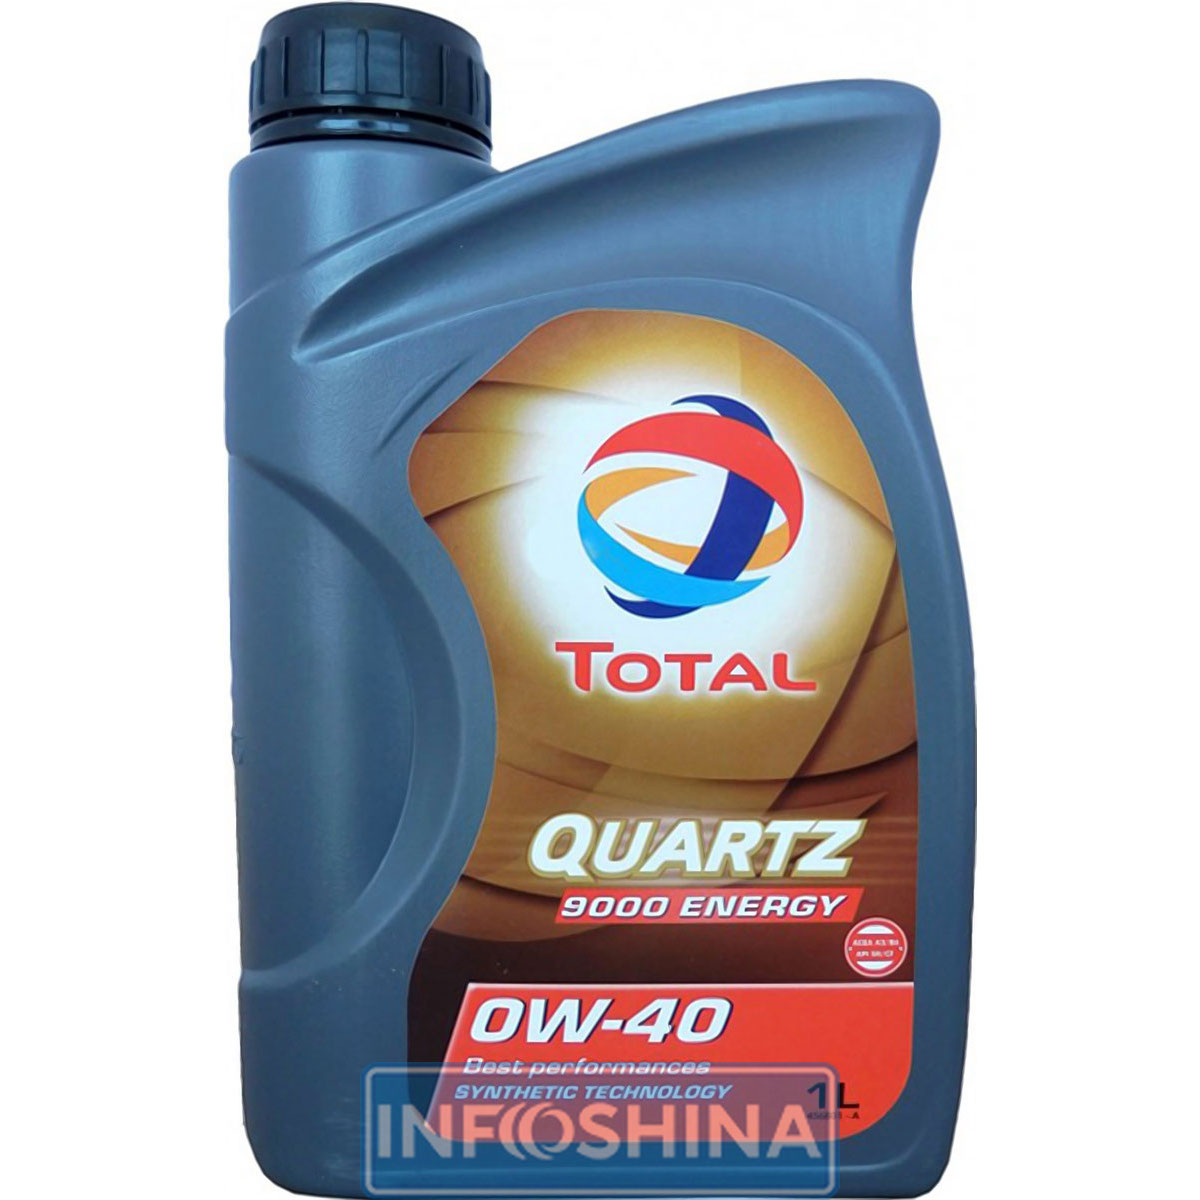 Купить масло Total Quartz 9000 Energy 0W-40 (1л)